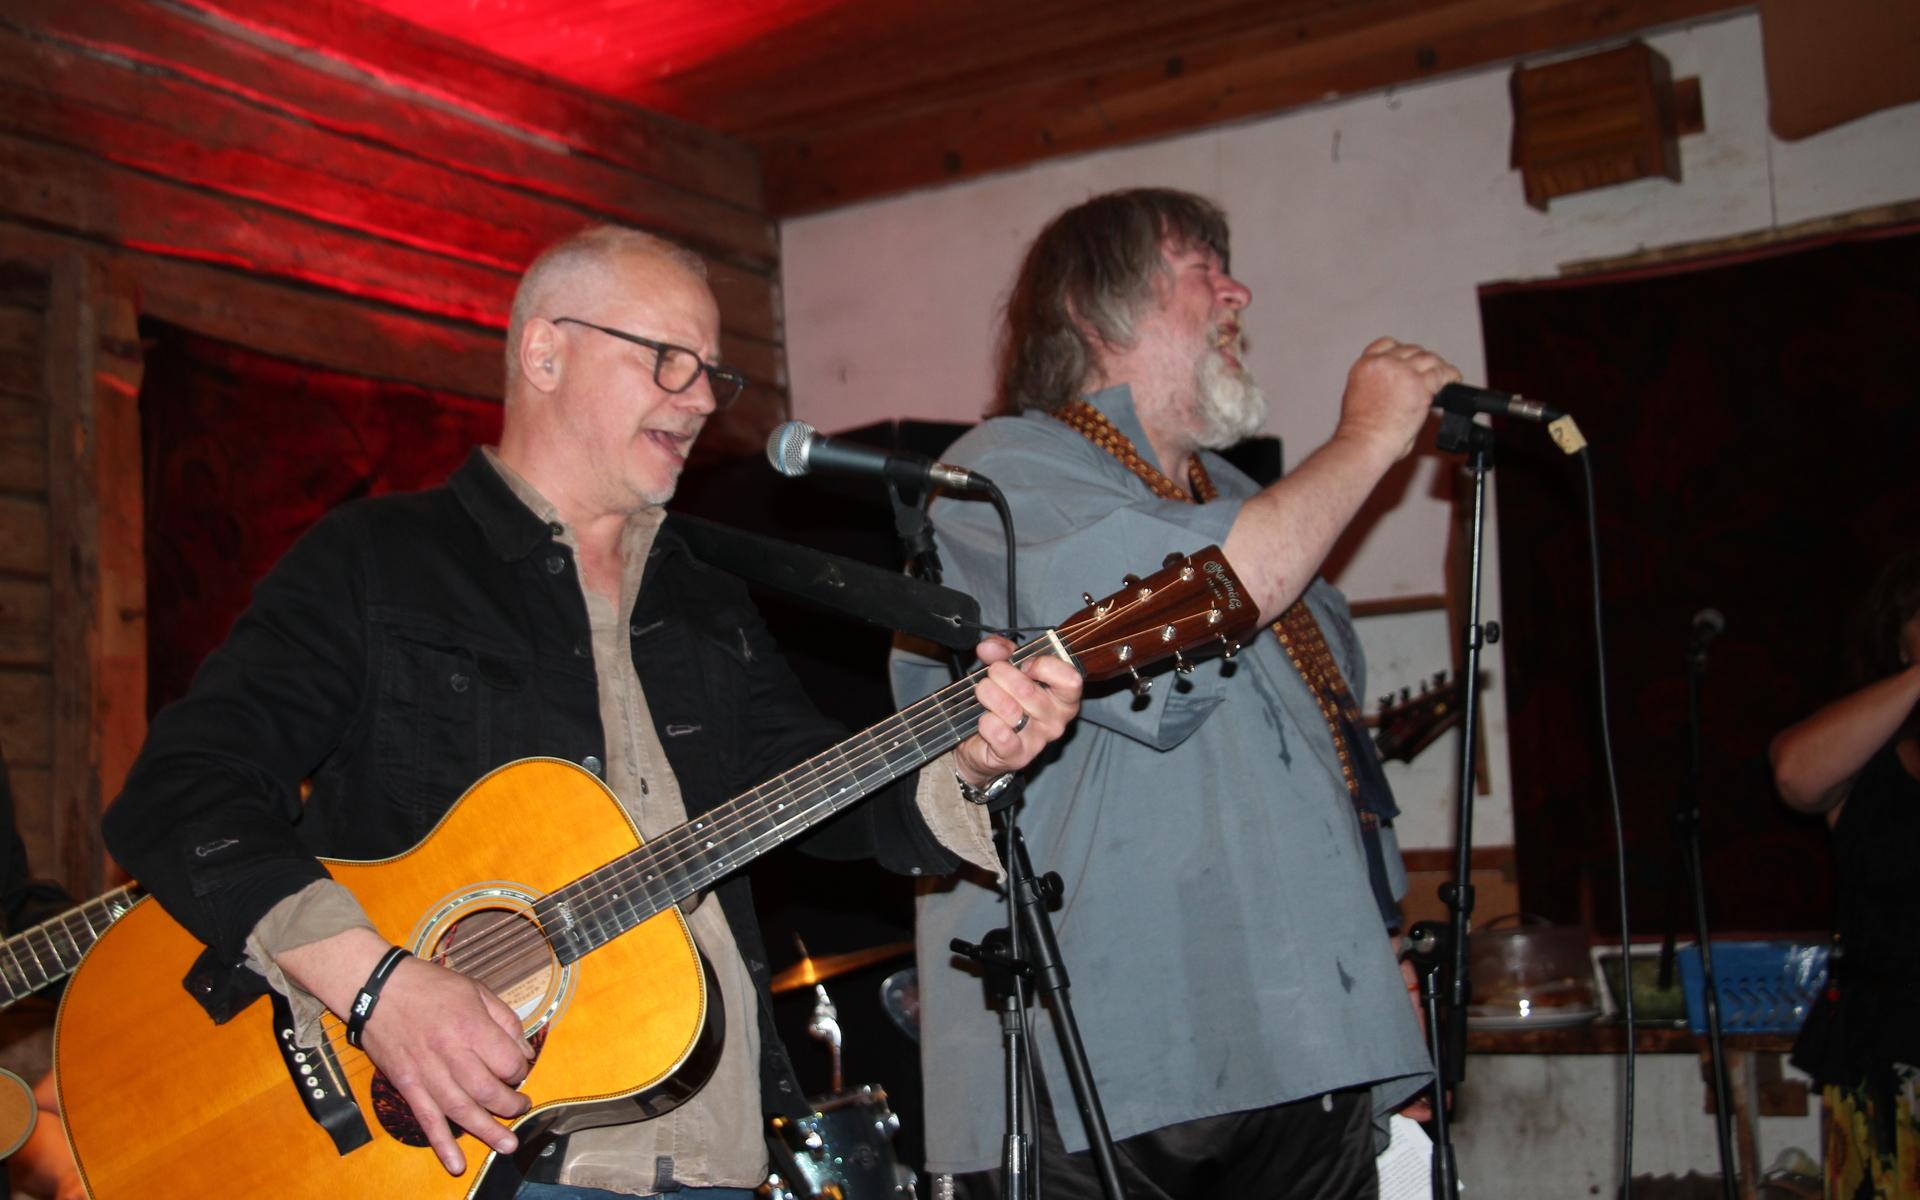 Ebbot Lundberg, som under fredagen även uppträdde på Slussens pensionat, gästspelade också på scenen tillsammans med musikerna i Johnny L’amour Showdown.